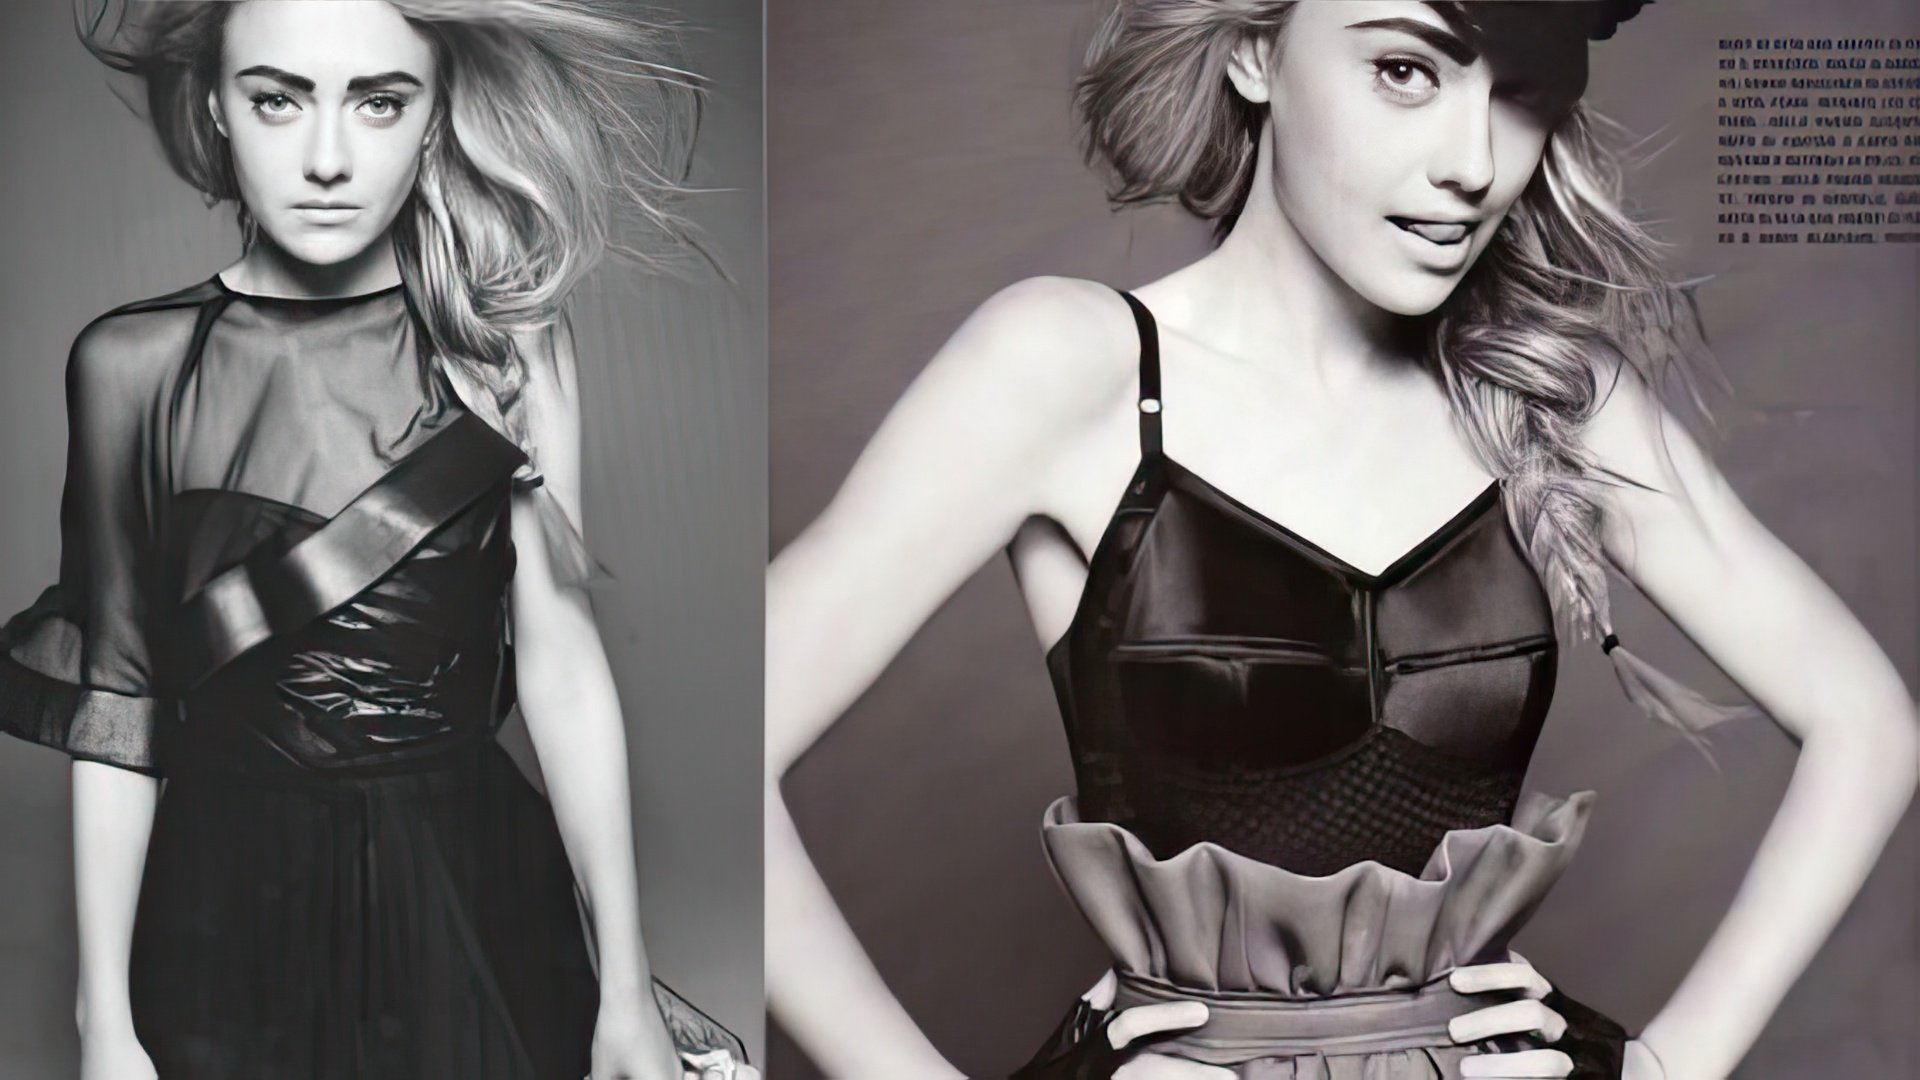 15-Year Old Dakota Fanning Poses for Vogue